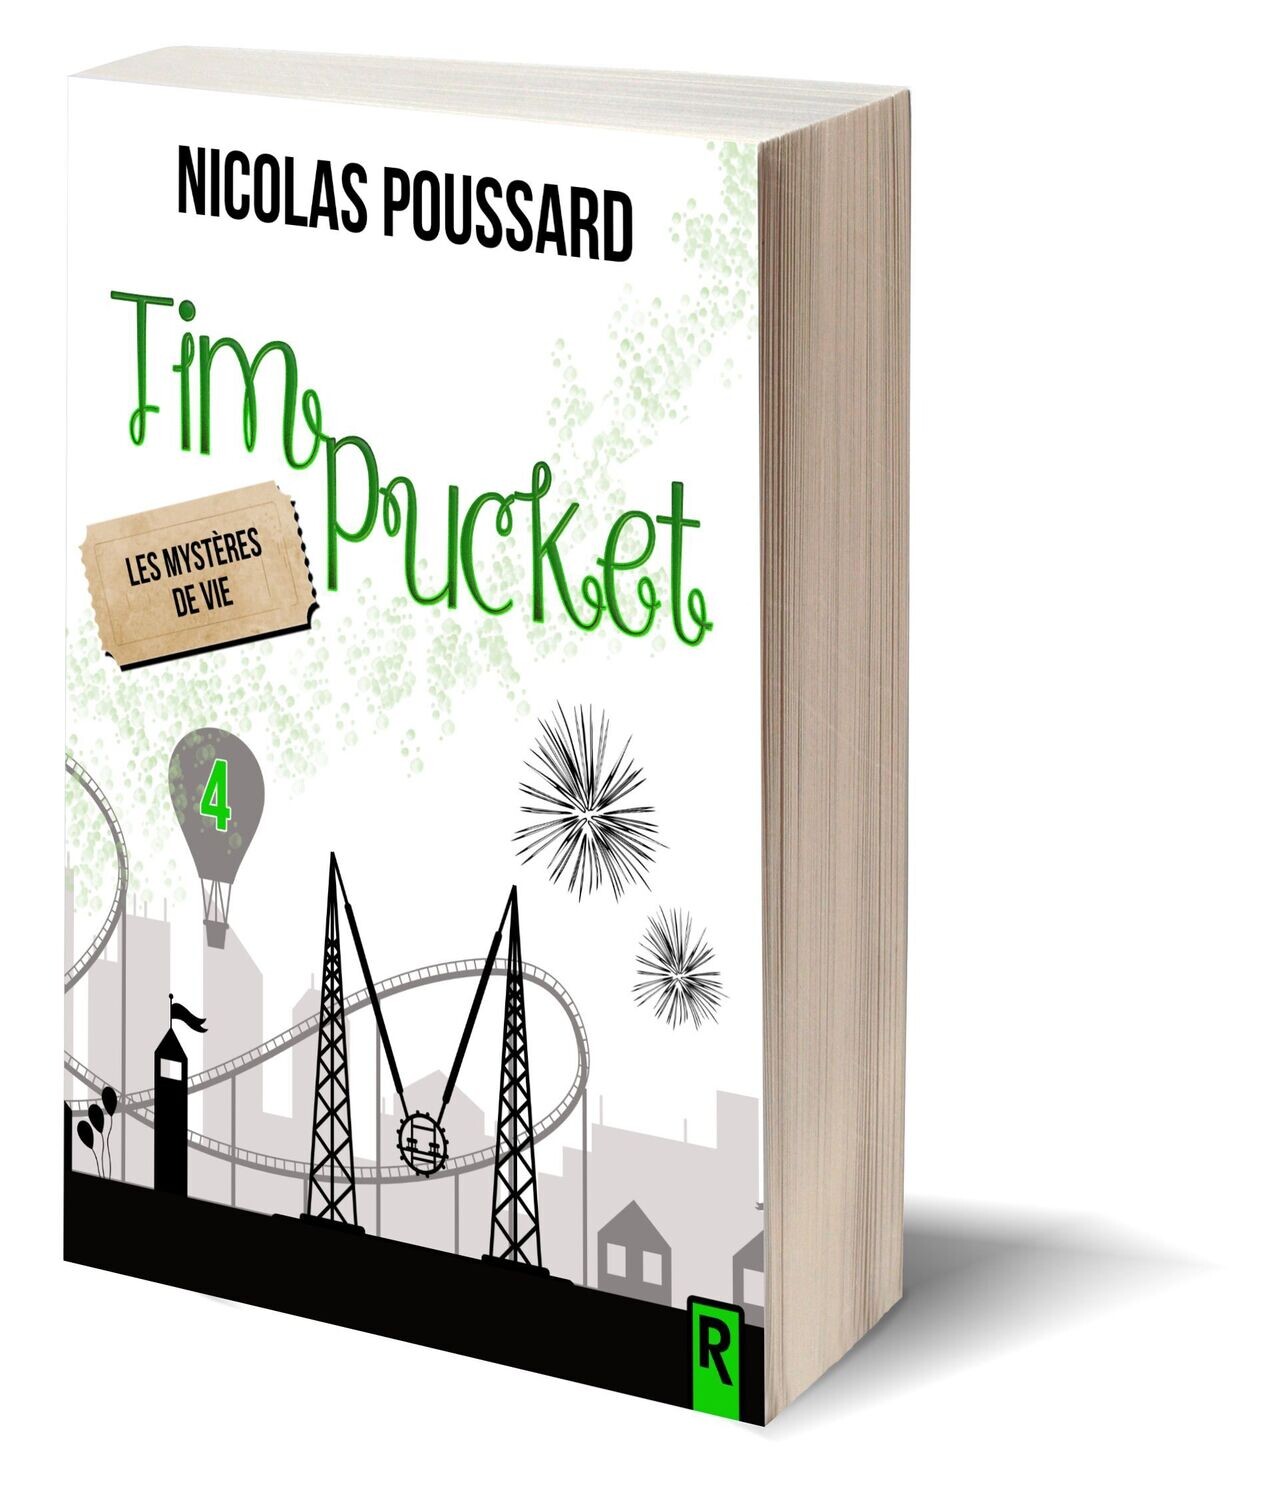 Tim Pucket : 4 - Les mystères de Vie - Nicolas Poussard